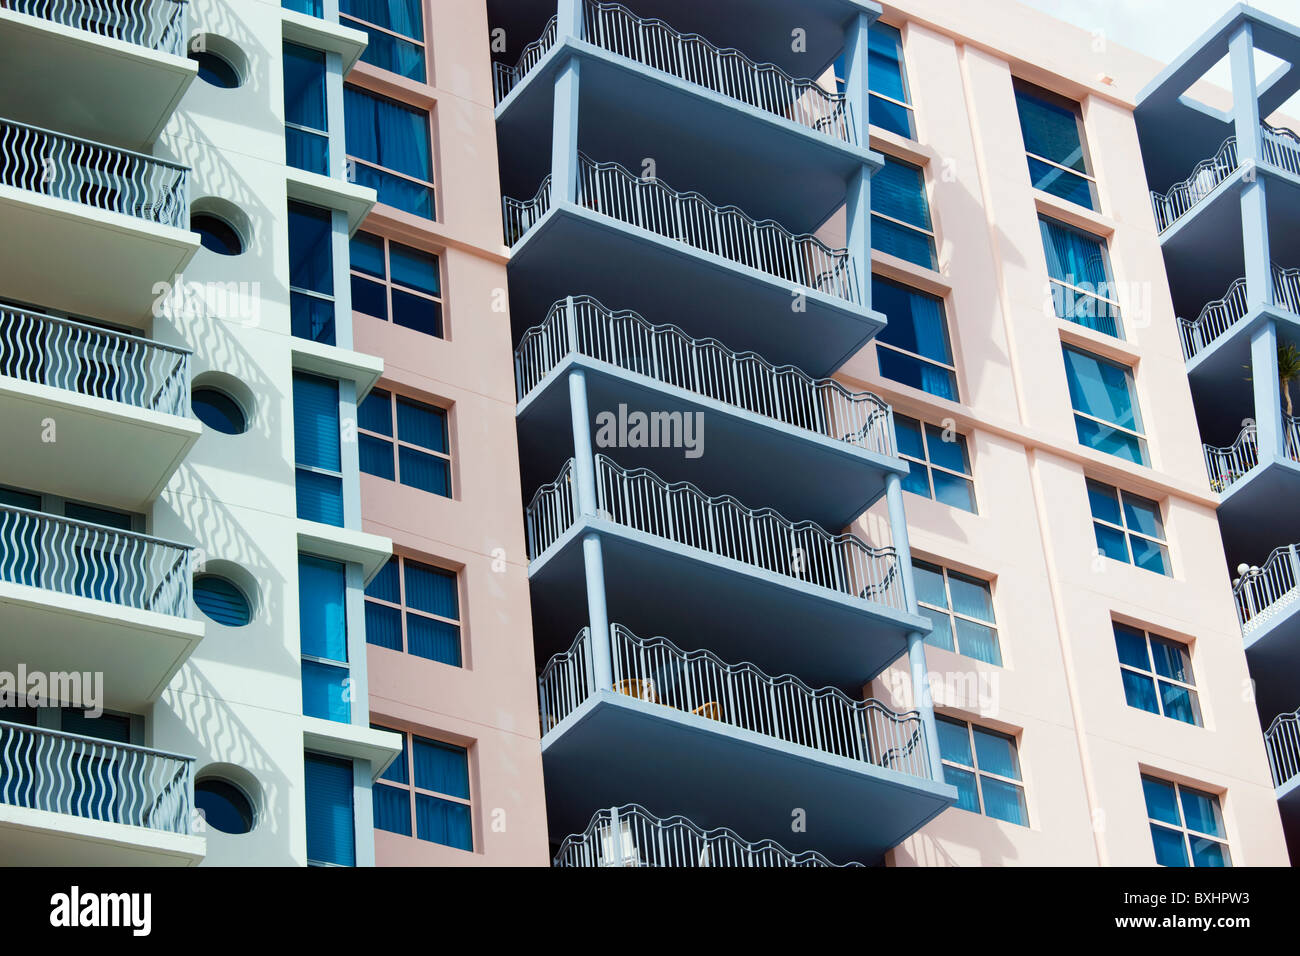 Architettura Art deco, in colori pastello, alto luogo blocchi di appartamenti Ocean Drive e South Beach, Miami, Florida, Stati Uniti d'America Foto Stock